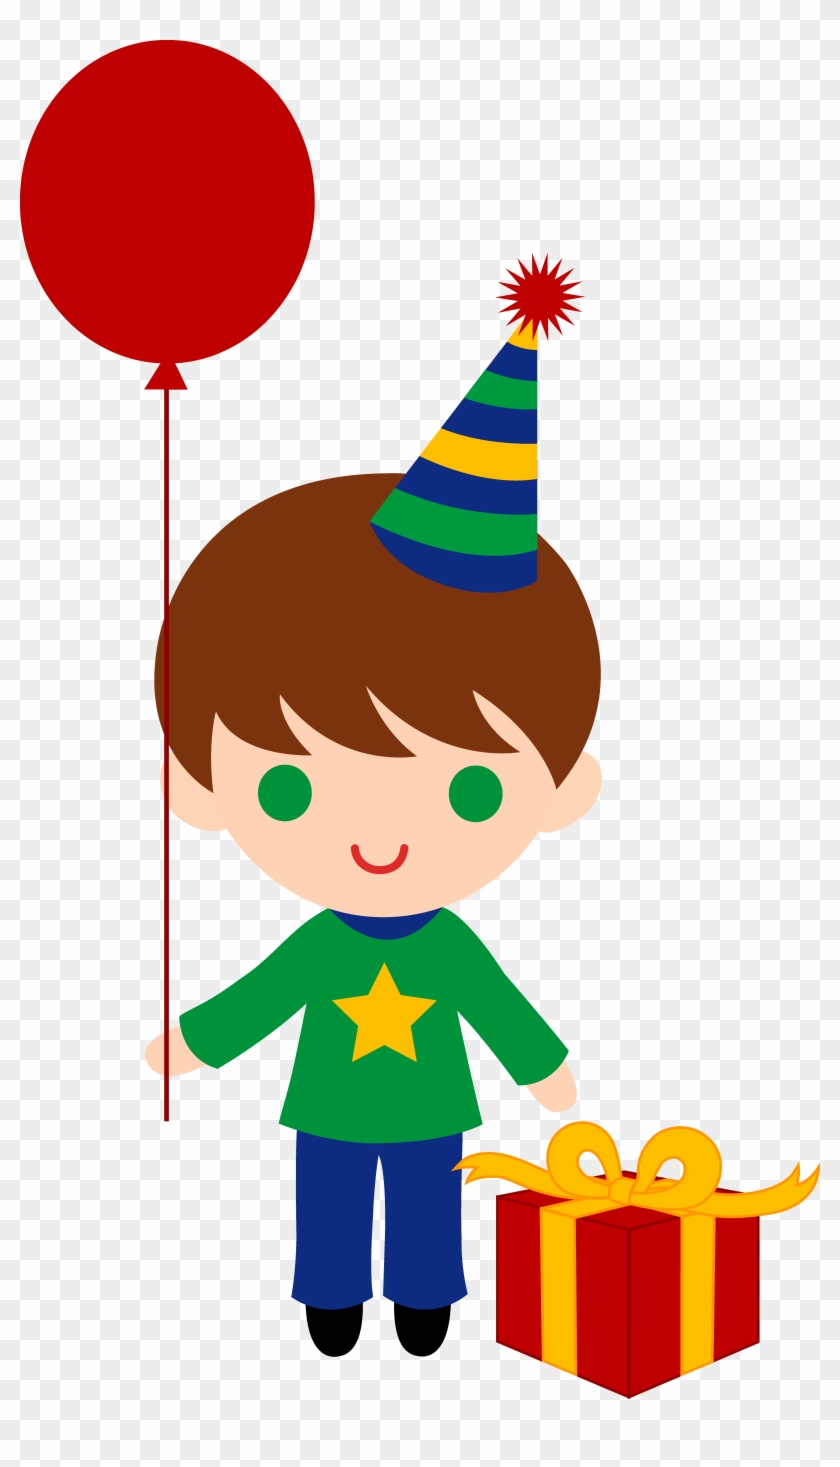 Cute Birthday Boy Clip Art - Birthday Boy Clipart #295566